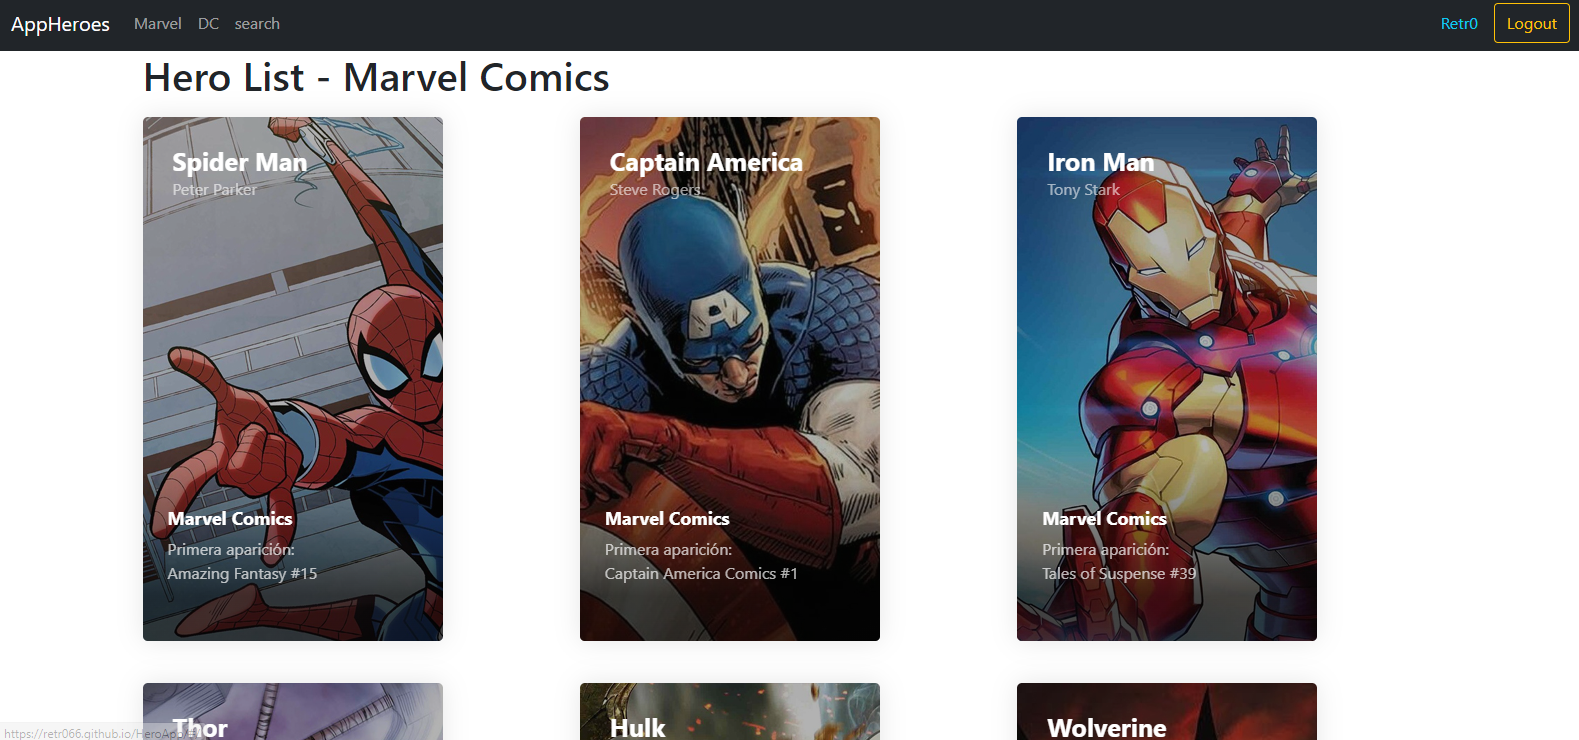 Aplicacion Web para ver los heroes de DC comic y Marvel, esta realizado con Reactjs y Bootstrap